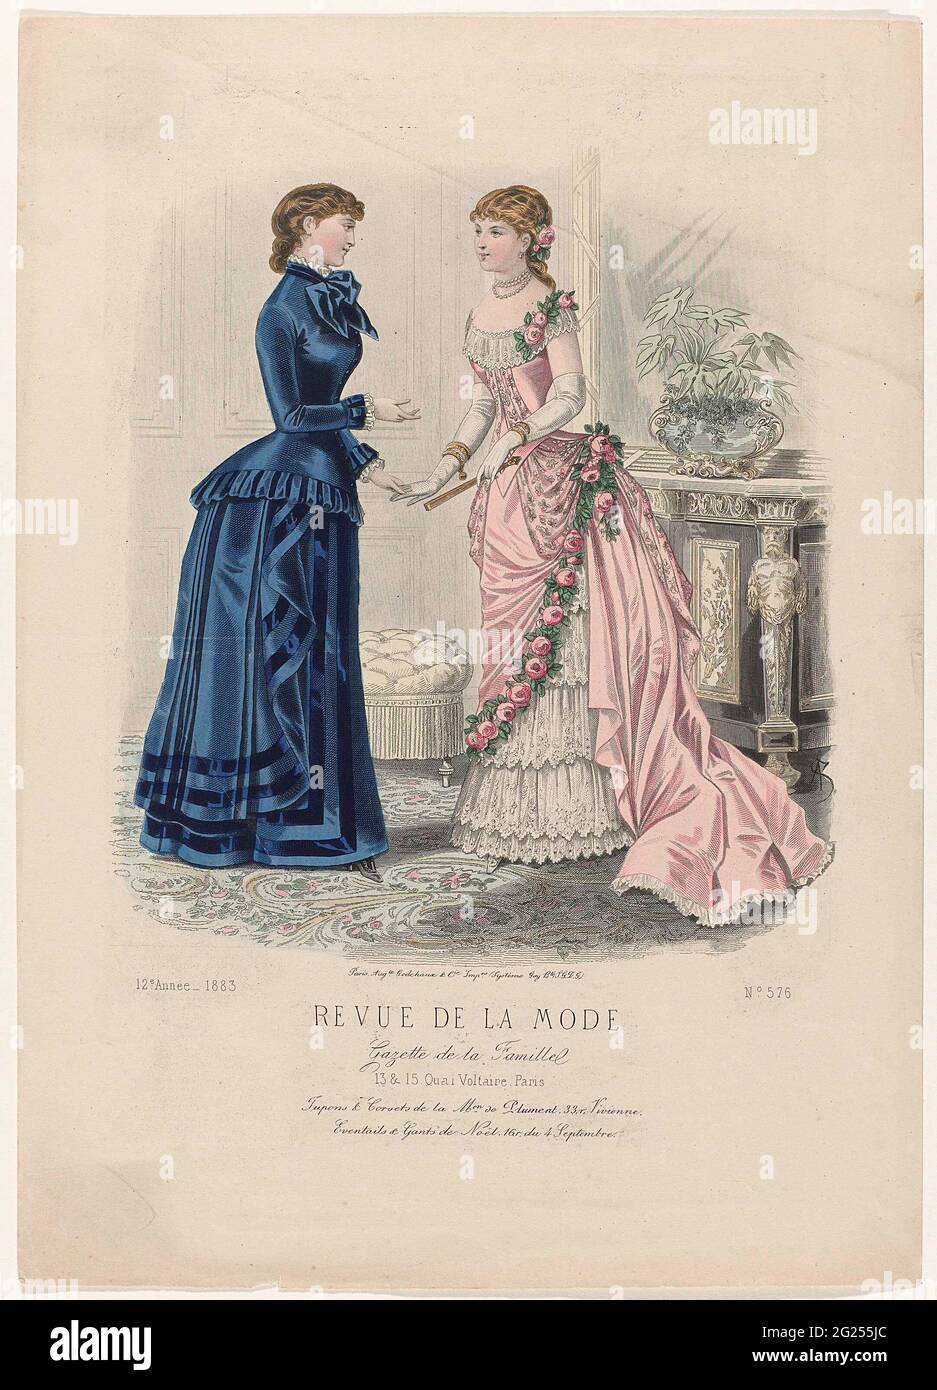 Revue de la fashion, Gazette de la Famille, Dimanche 14 Janvier 1883, 12th  annee, no. 576: Jupons & Corsets (...). Two women in an interior. Left: ' Robe d'Intérieur' of blue wool, decorated